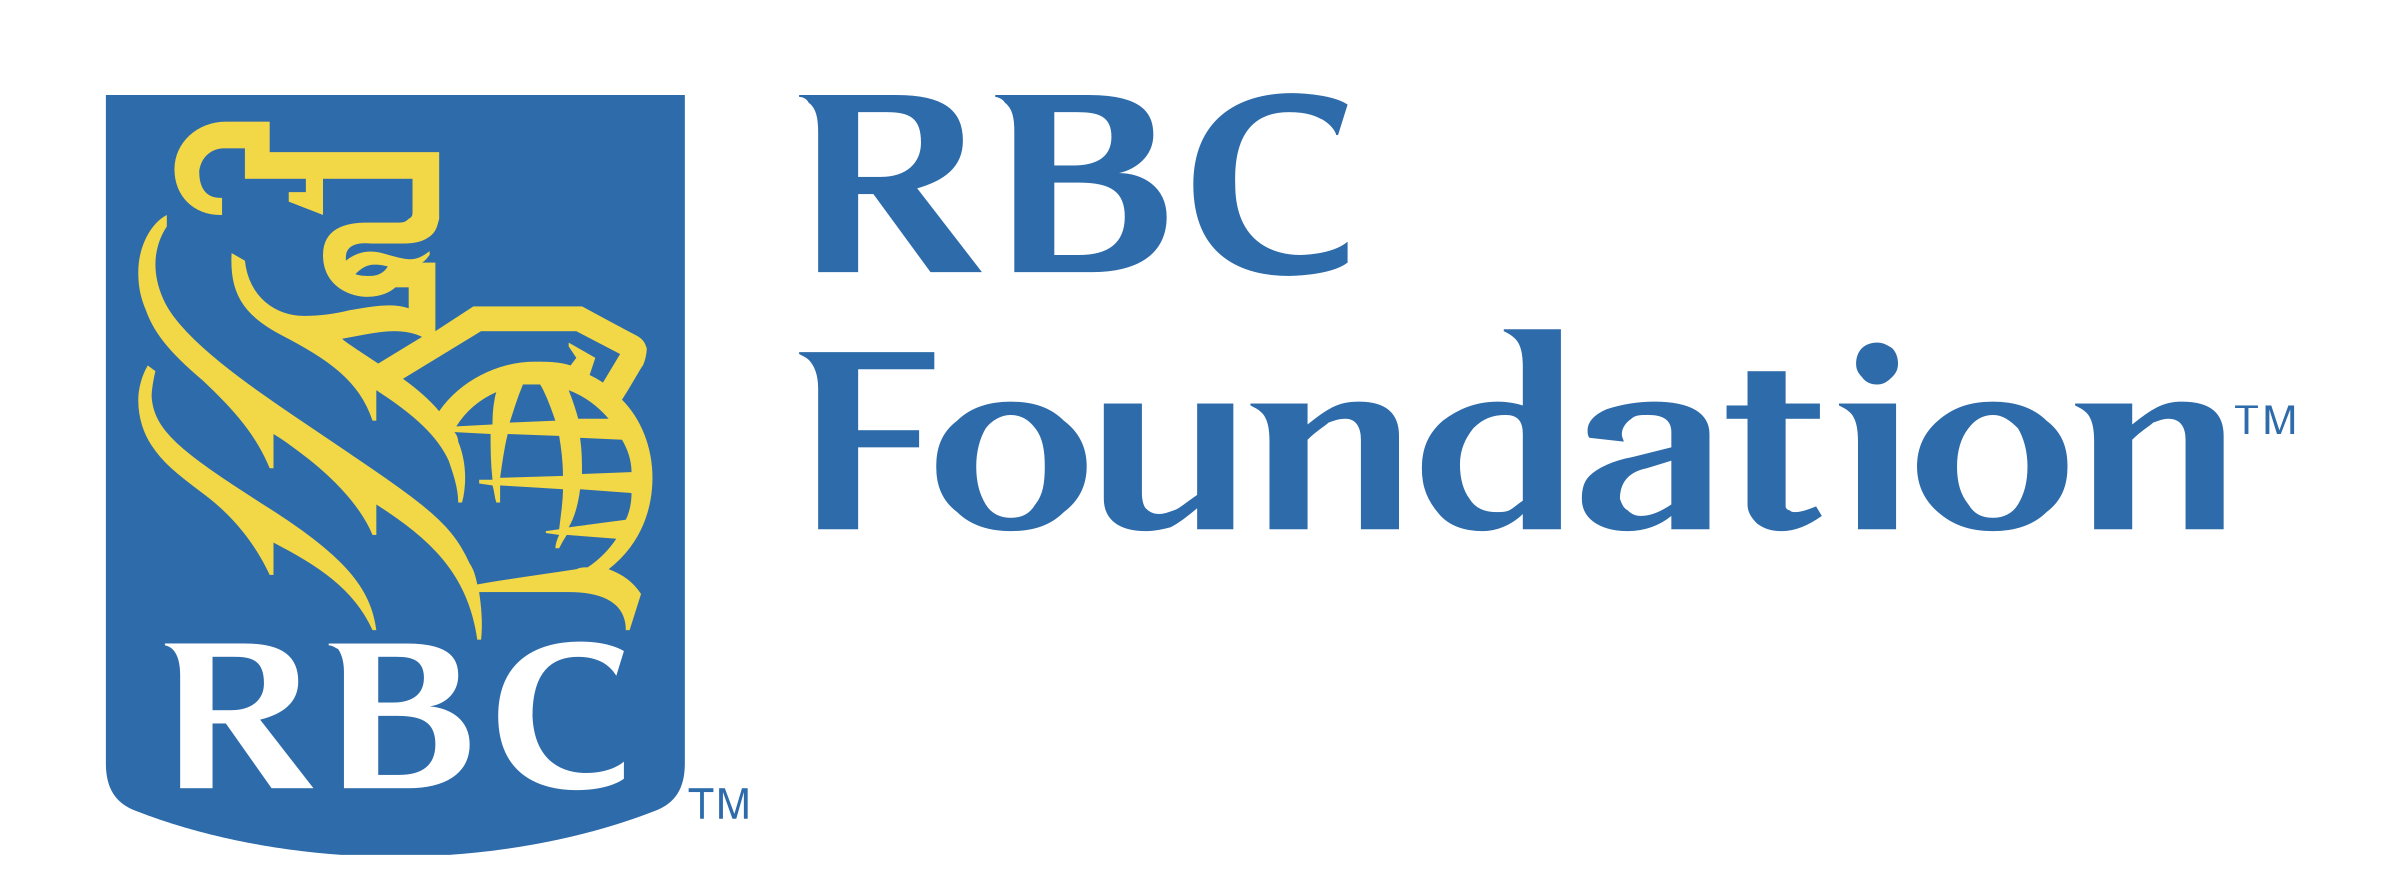 rbc-foundation-logo-png-transparent-e1590513367355